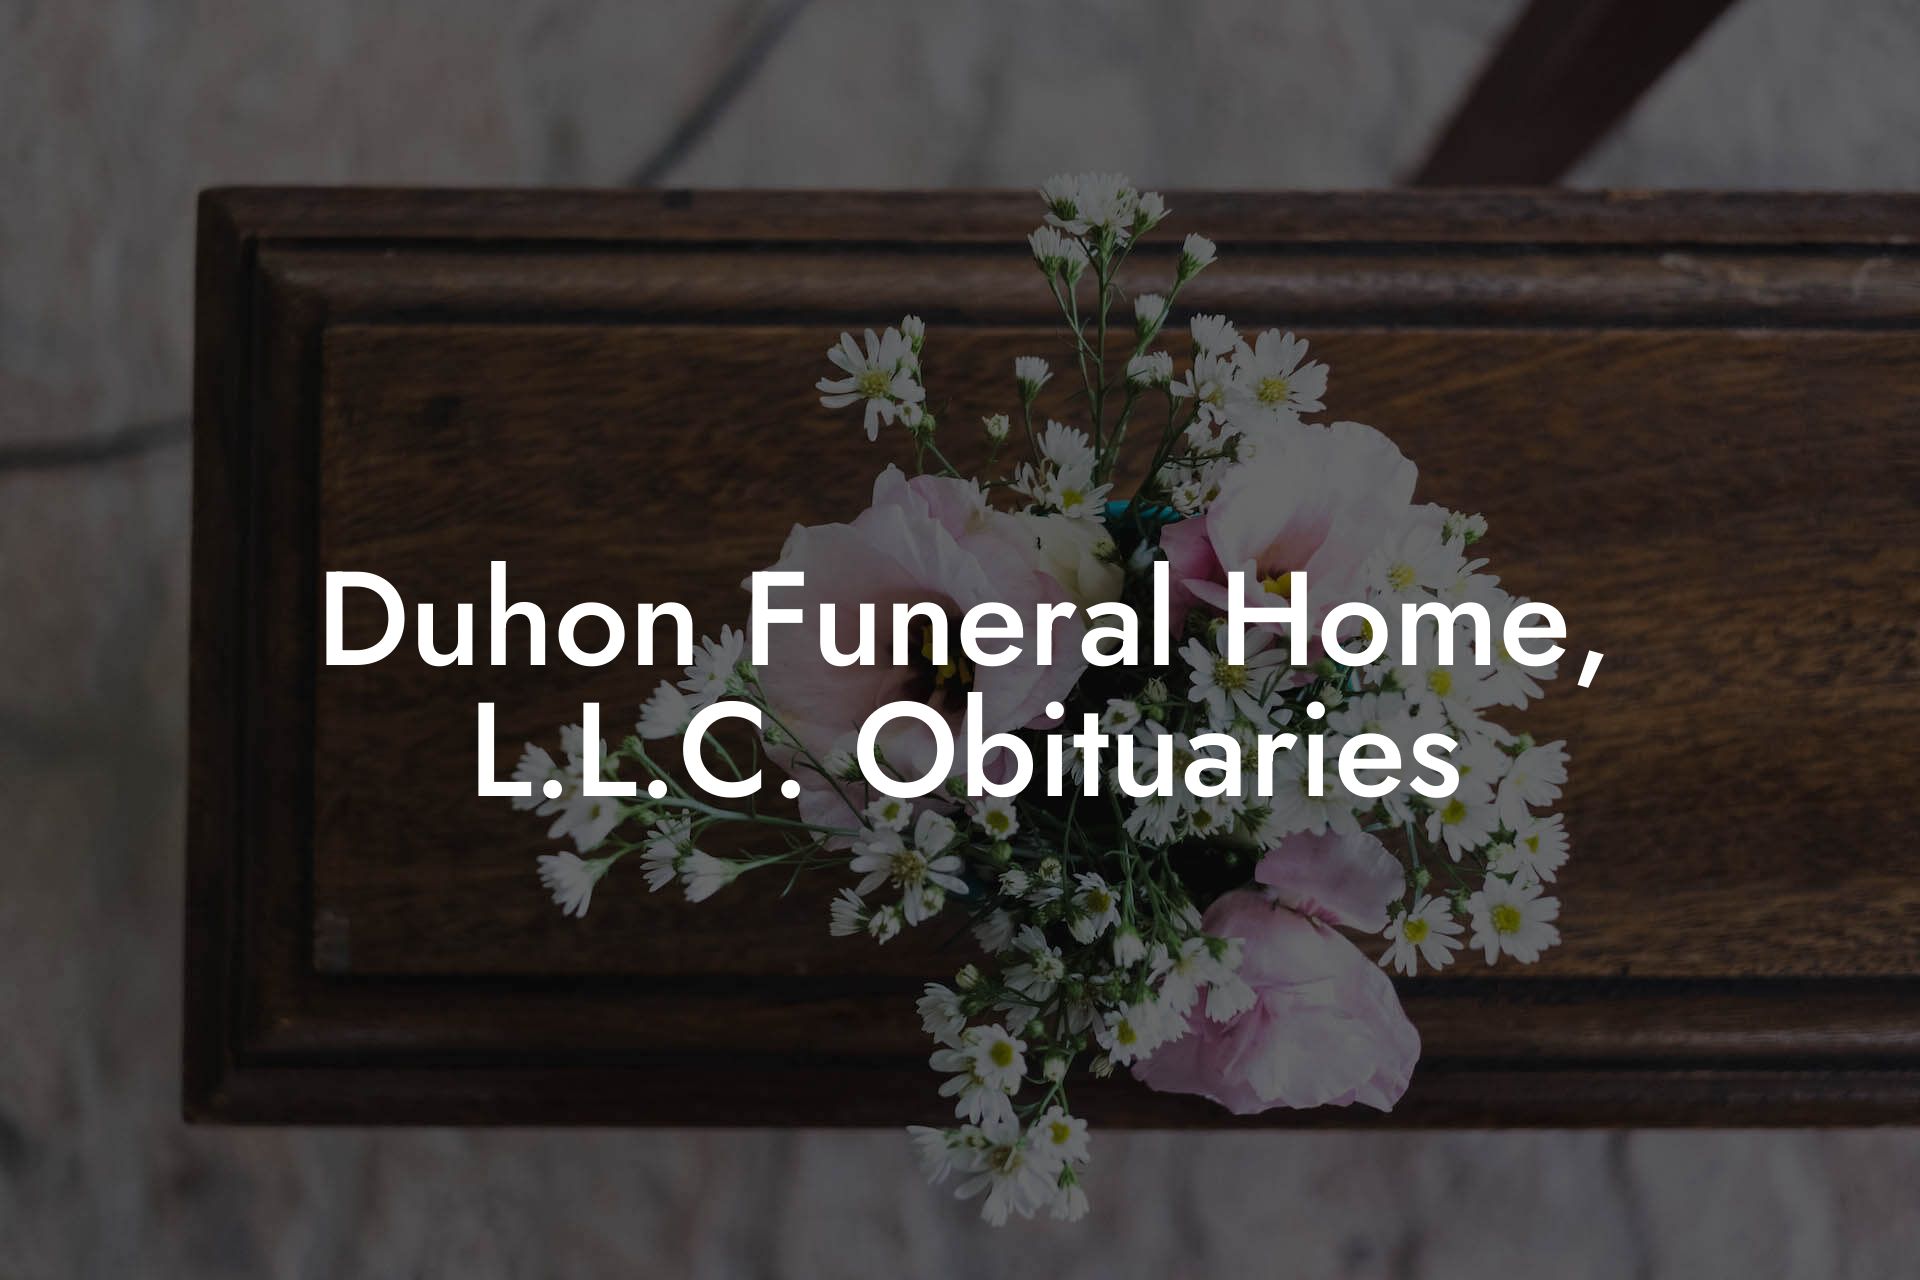 Duhon Funeral Home, L.L.C. Obituaries